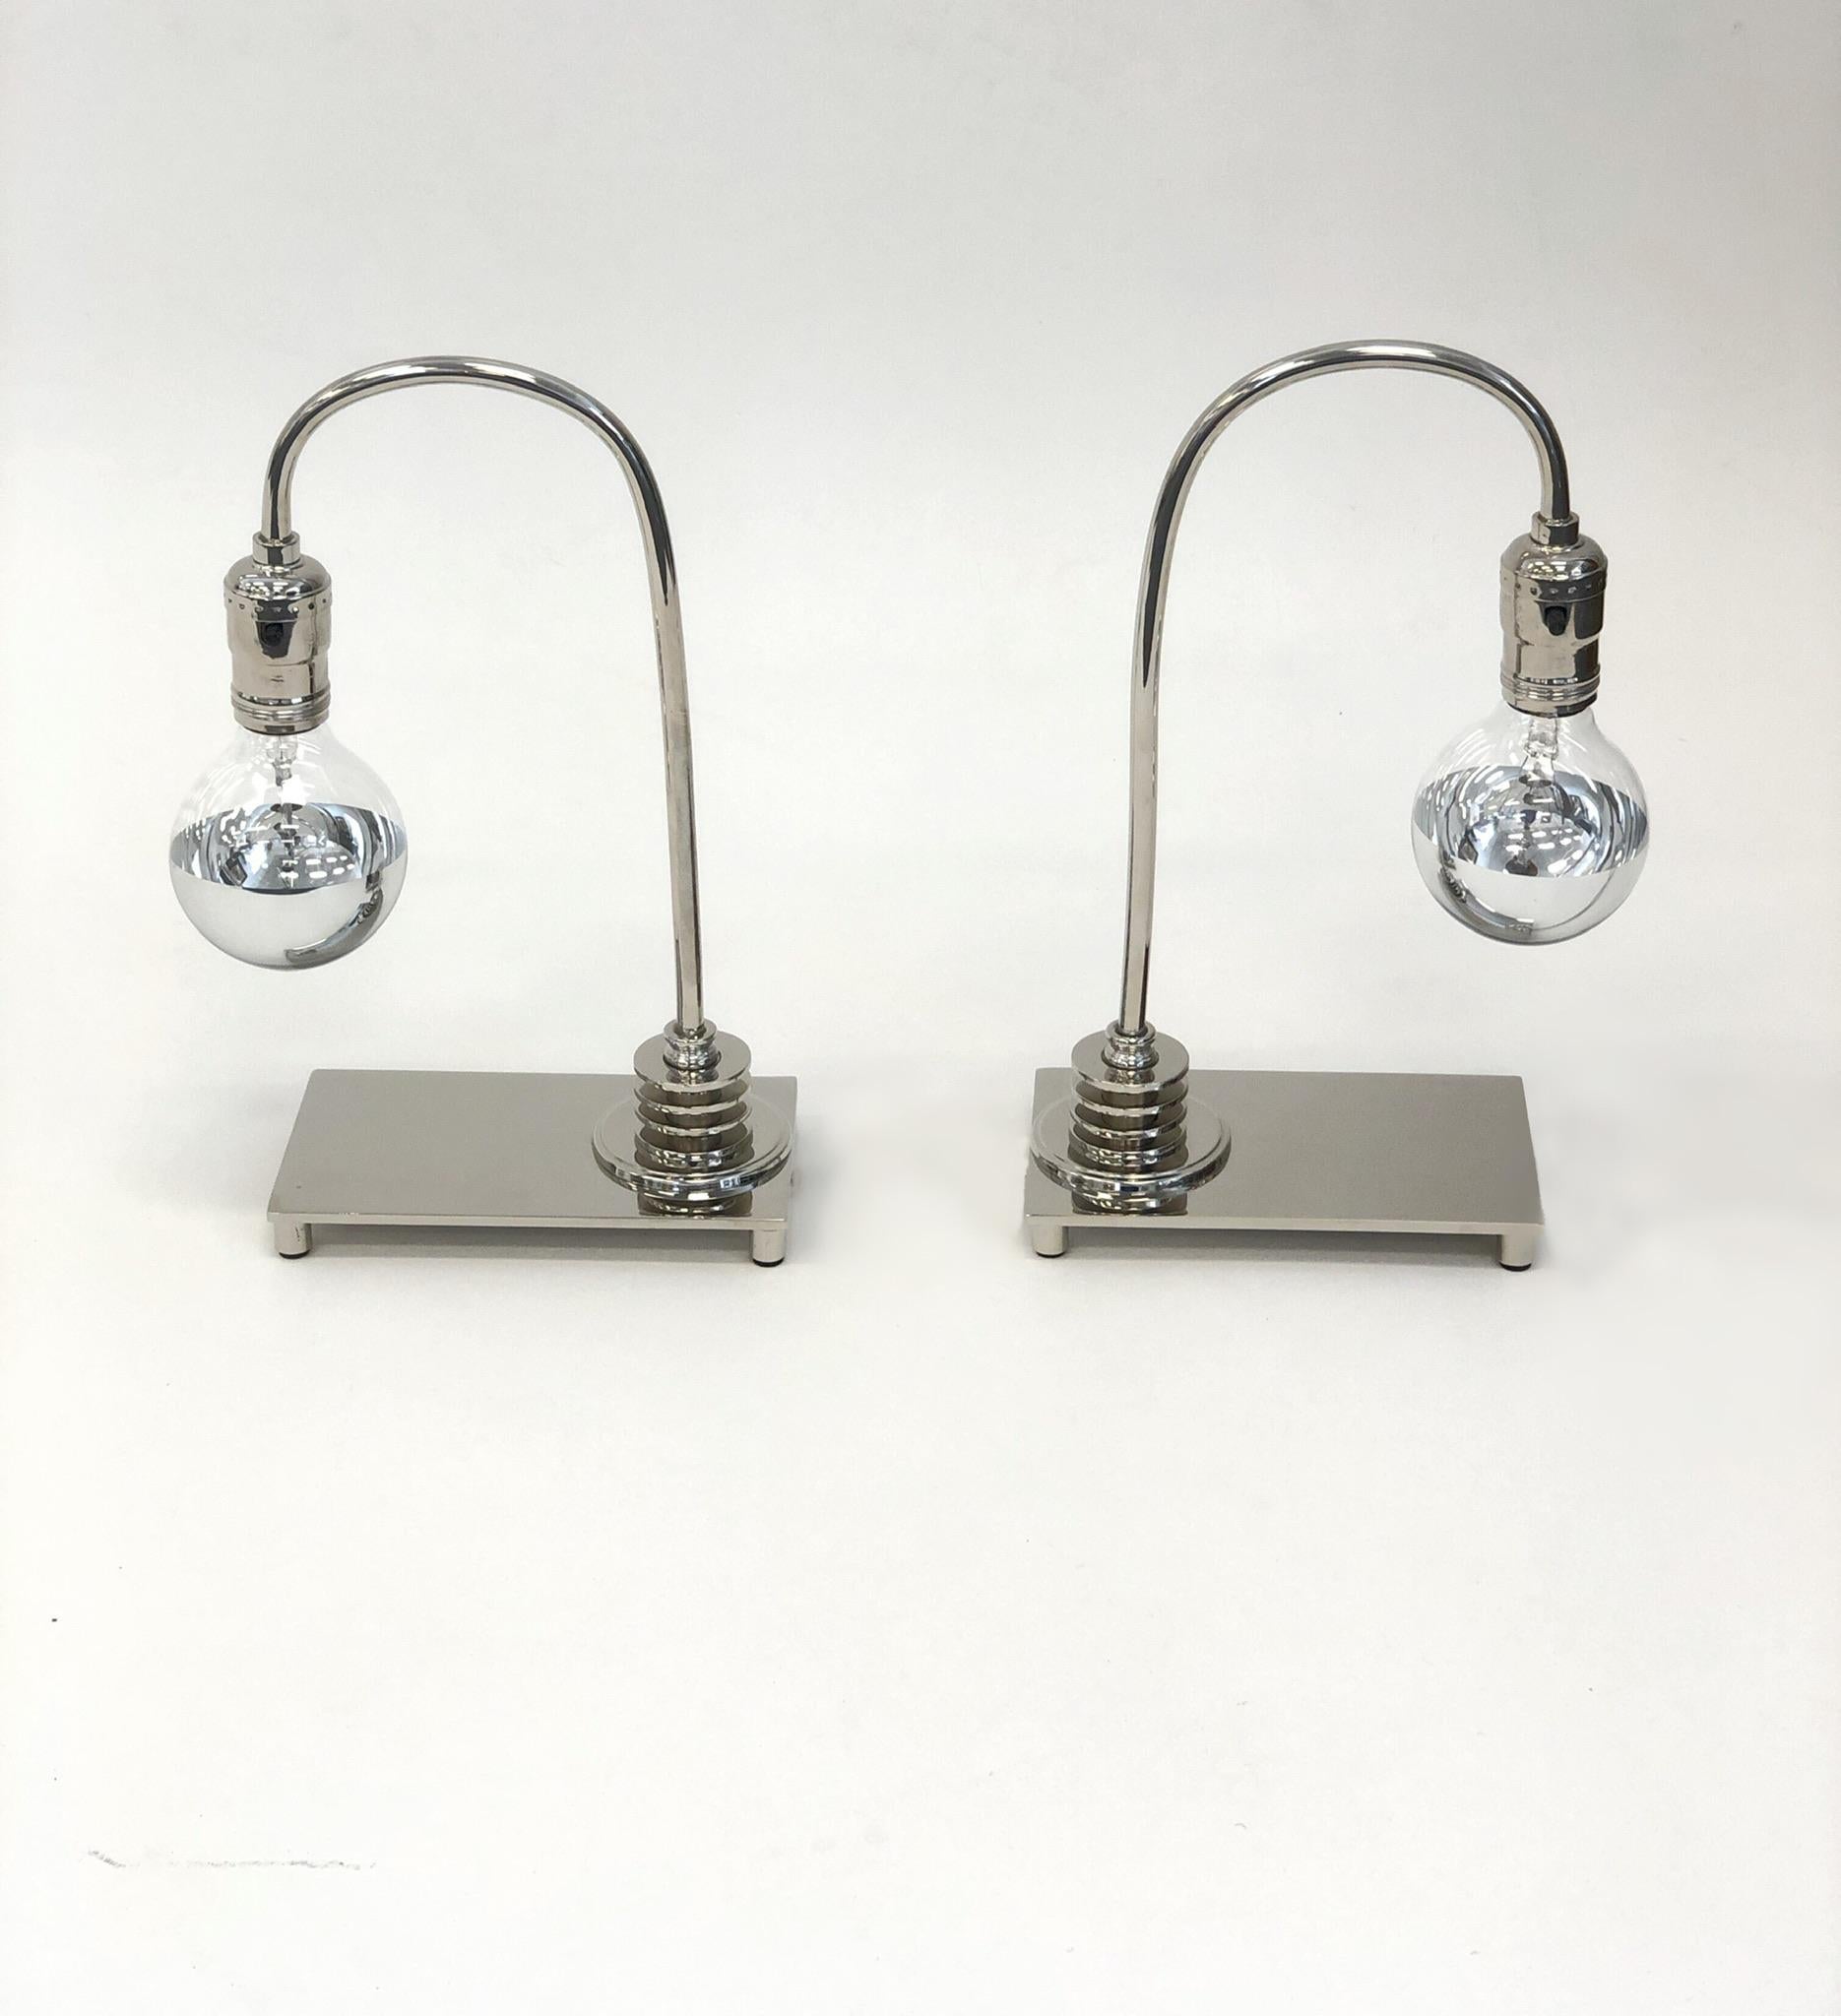 Ein schönes Paar Art Deco Tischlampen aus poliertem Nickel. Die Lampen wurden neu vernickelt und neu verkabelt. Die Glühbirnen sind halbverchromte Glühbirnen.
Abmessungen: 12,25